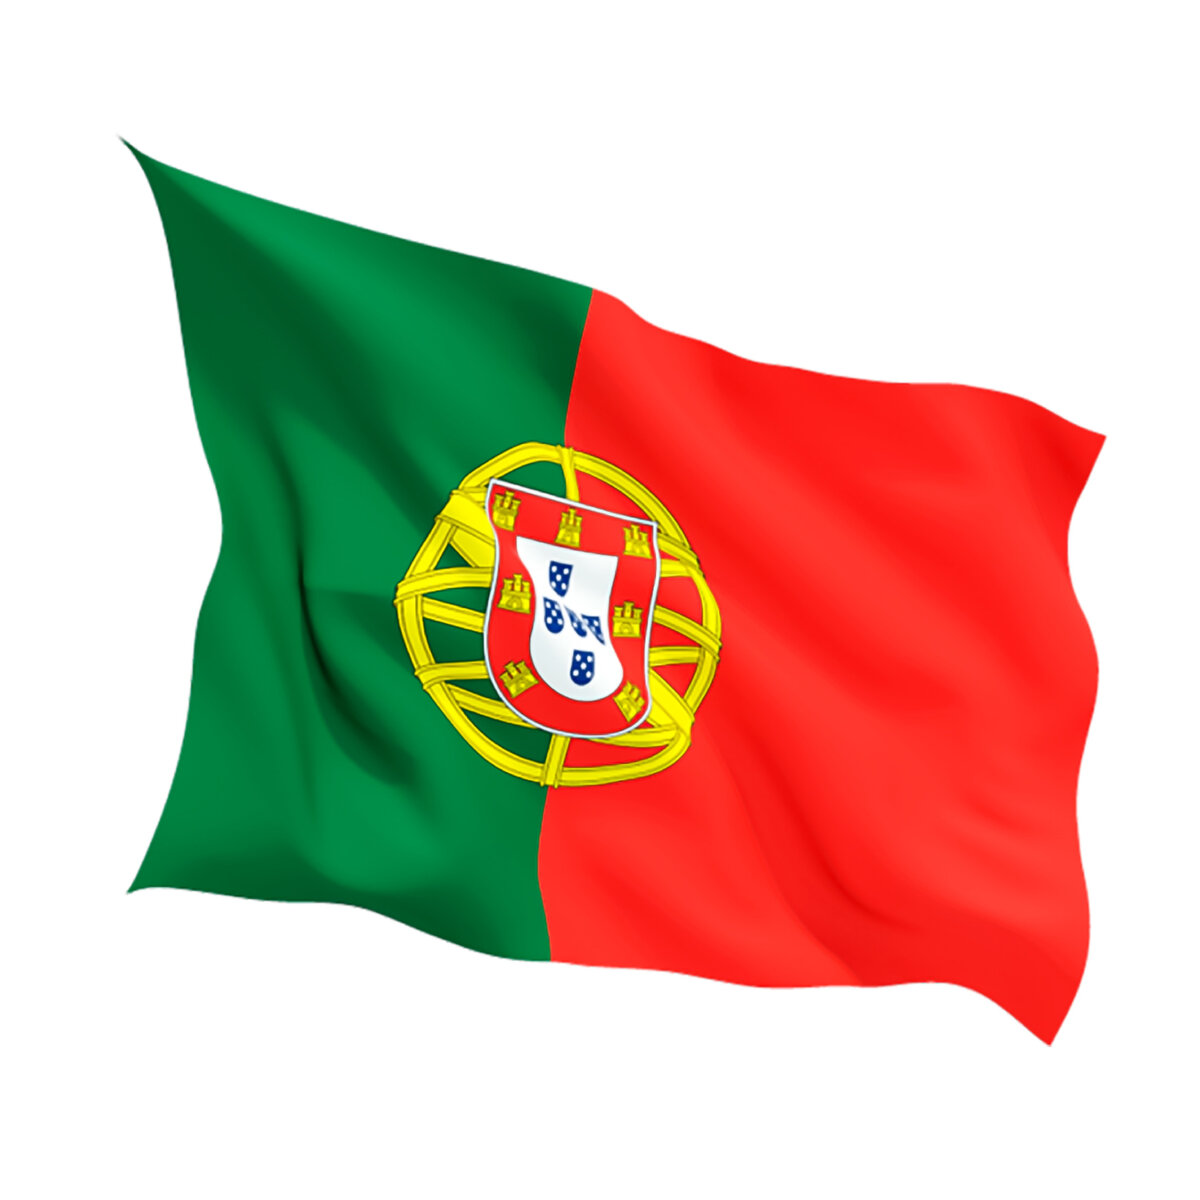 Португальский государственный страны. Флаг Португалии. Португалия флаг и герб. Флаг флаг Португалии. Буркина Фасо Португалия флаг.